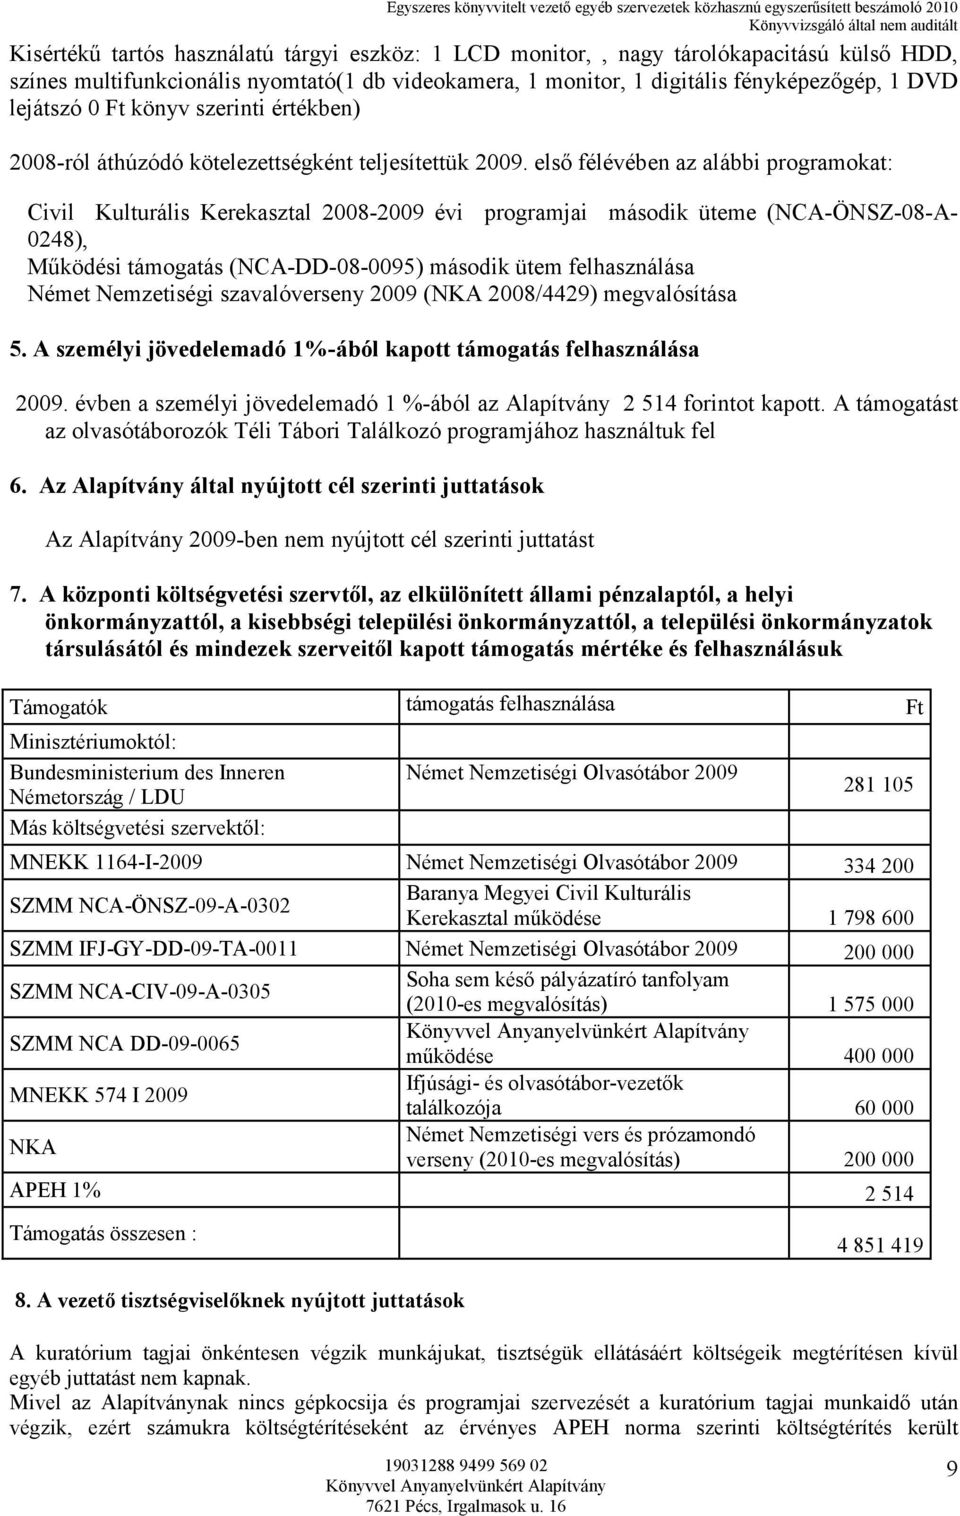 elsı félévében az alábbi programokat: Civil Kulturális Kerekasztal 2008-2009 évi programjai második üteme (NCA-ÖNSZ-08-A- 0248), Mőködési támogatás (NCA-DD-08-0095) második ütem felhasználása Német